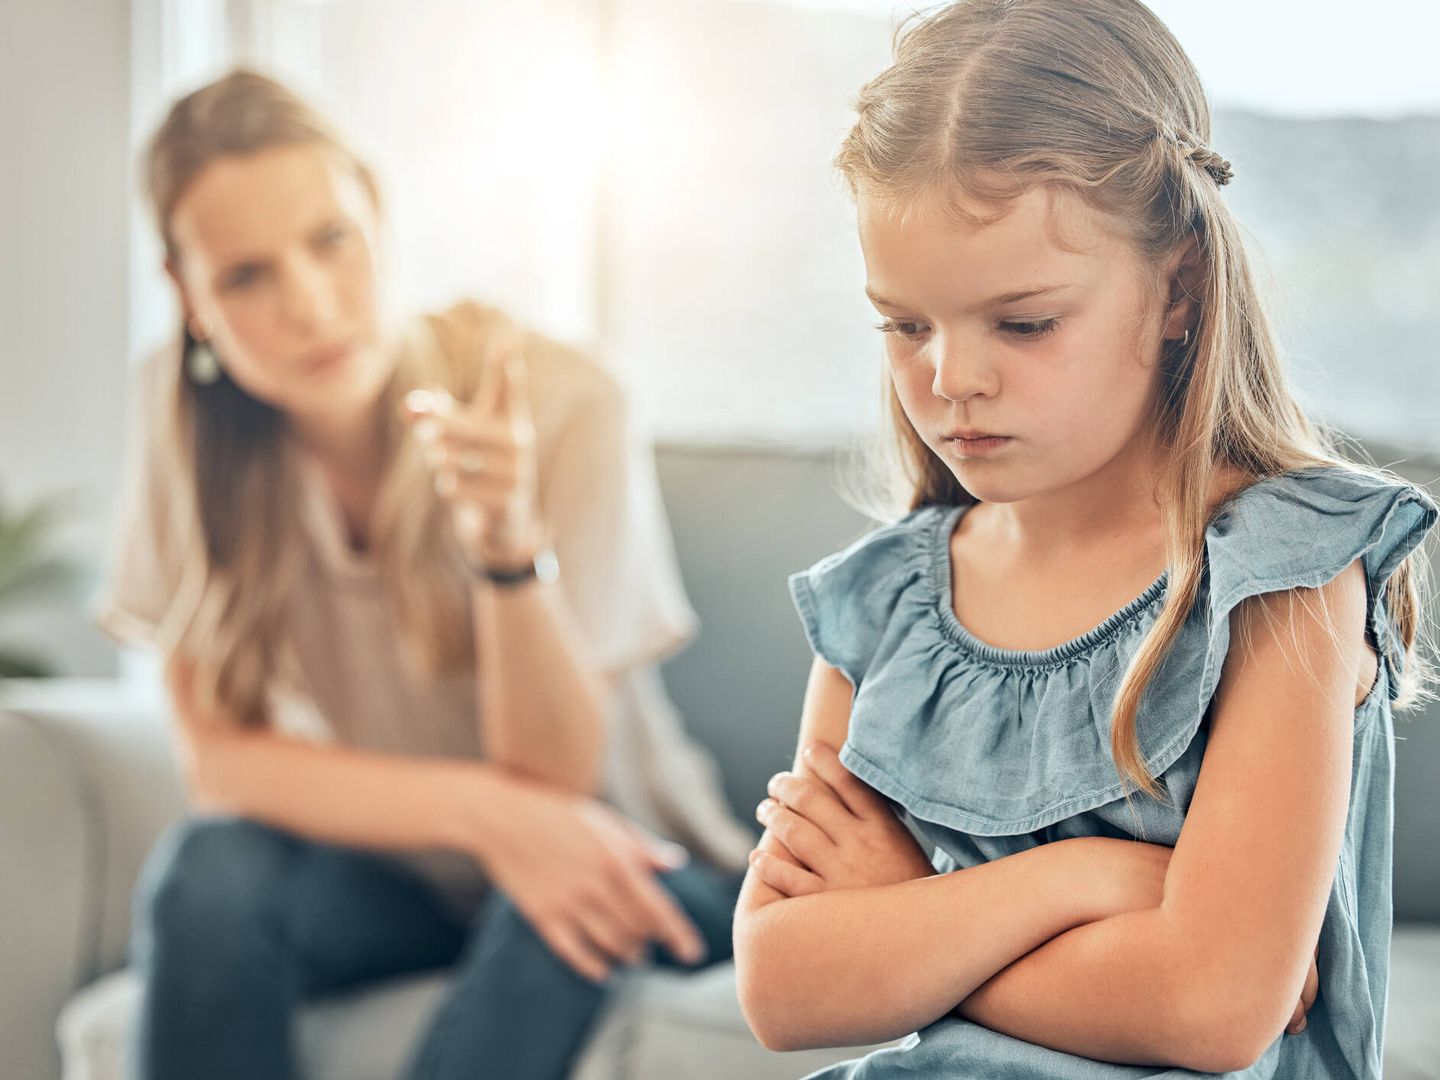 Un niño o niña estresado se enfada con facilidad. (iStock)